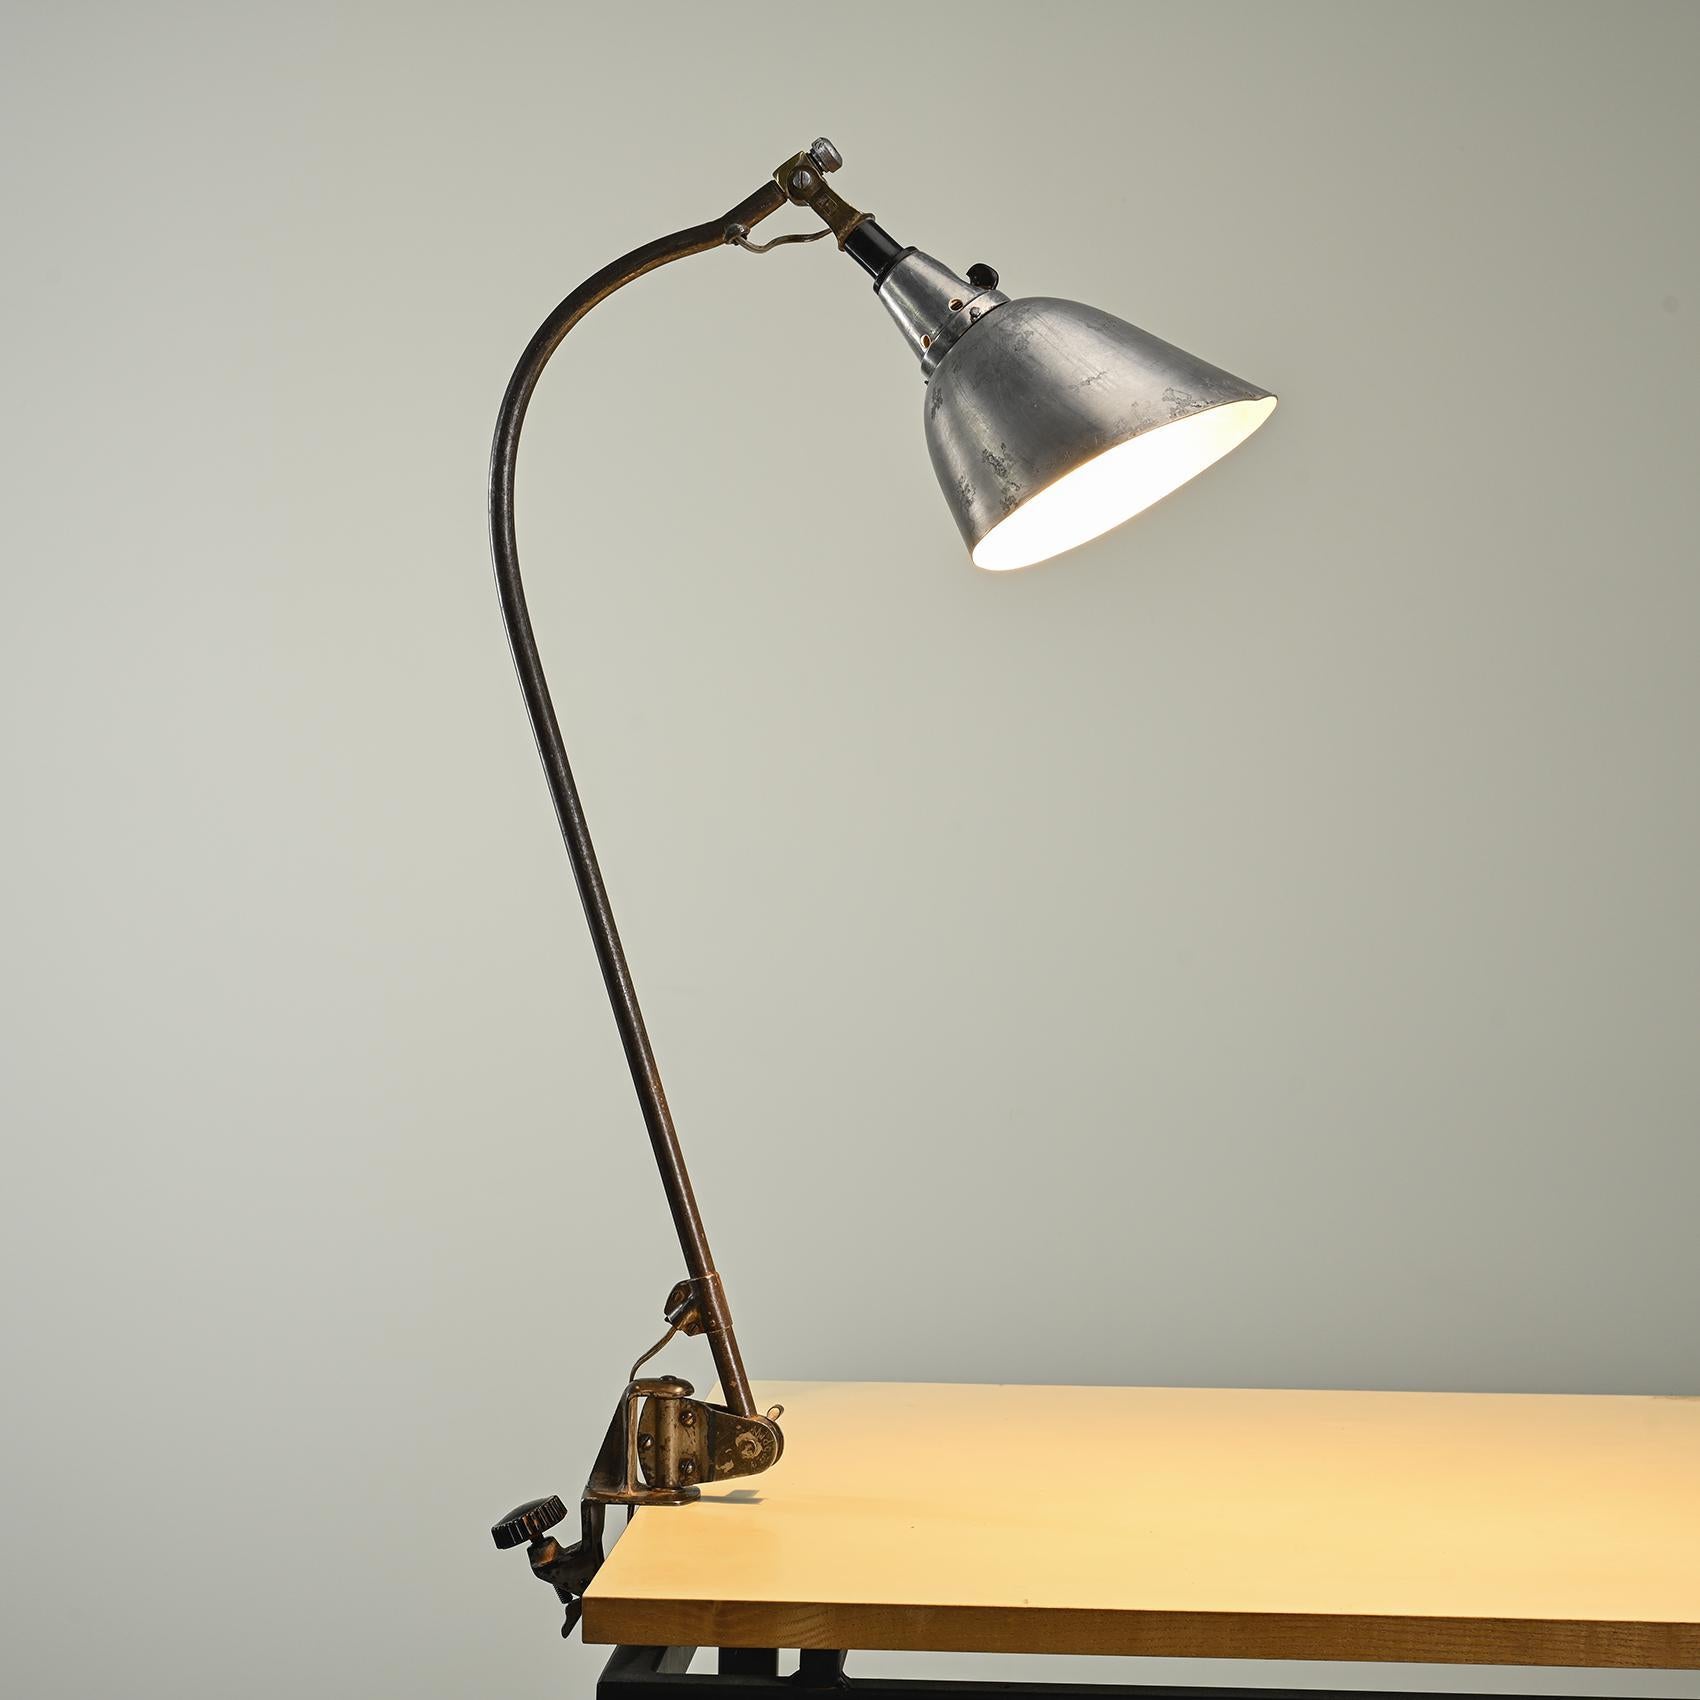 Lampe à pince des années 1930, choisie par Walter Gropius pour équiper le bâtiment du Bauhaus à Dessau en 1926.

Cette lampe à pince réglable, connue sous le nom de modèle Typ 113 Peitsche, possède un bras courbé abritant un diffuseur en tôle